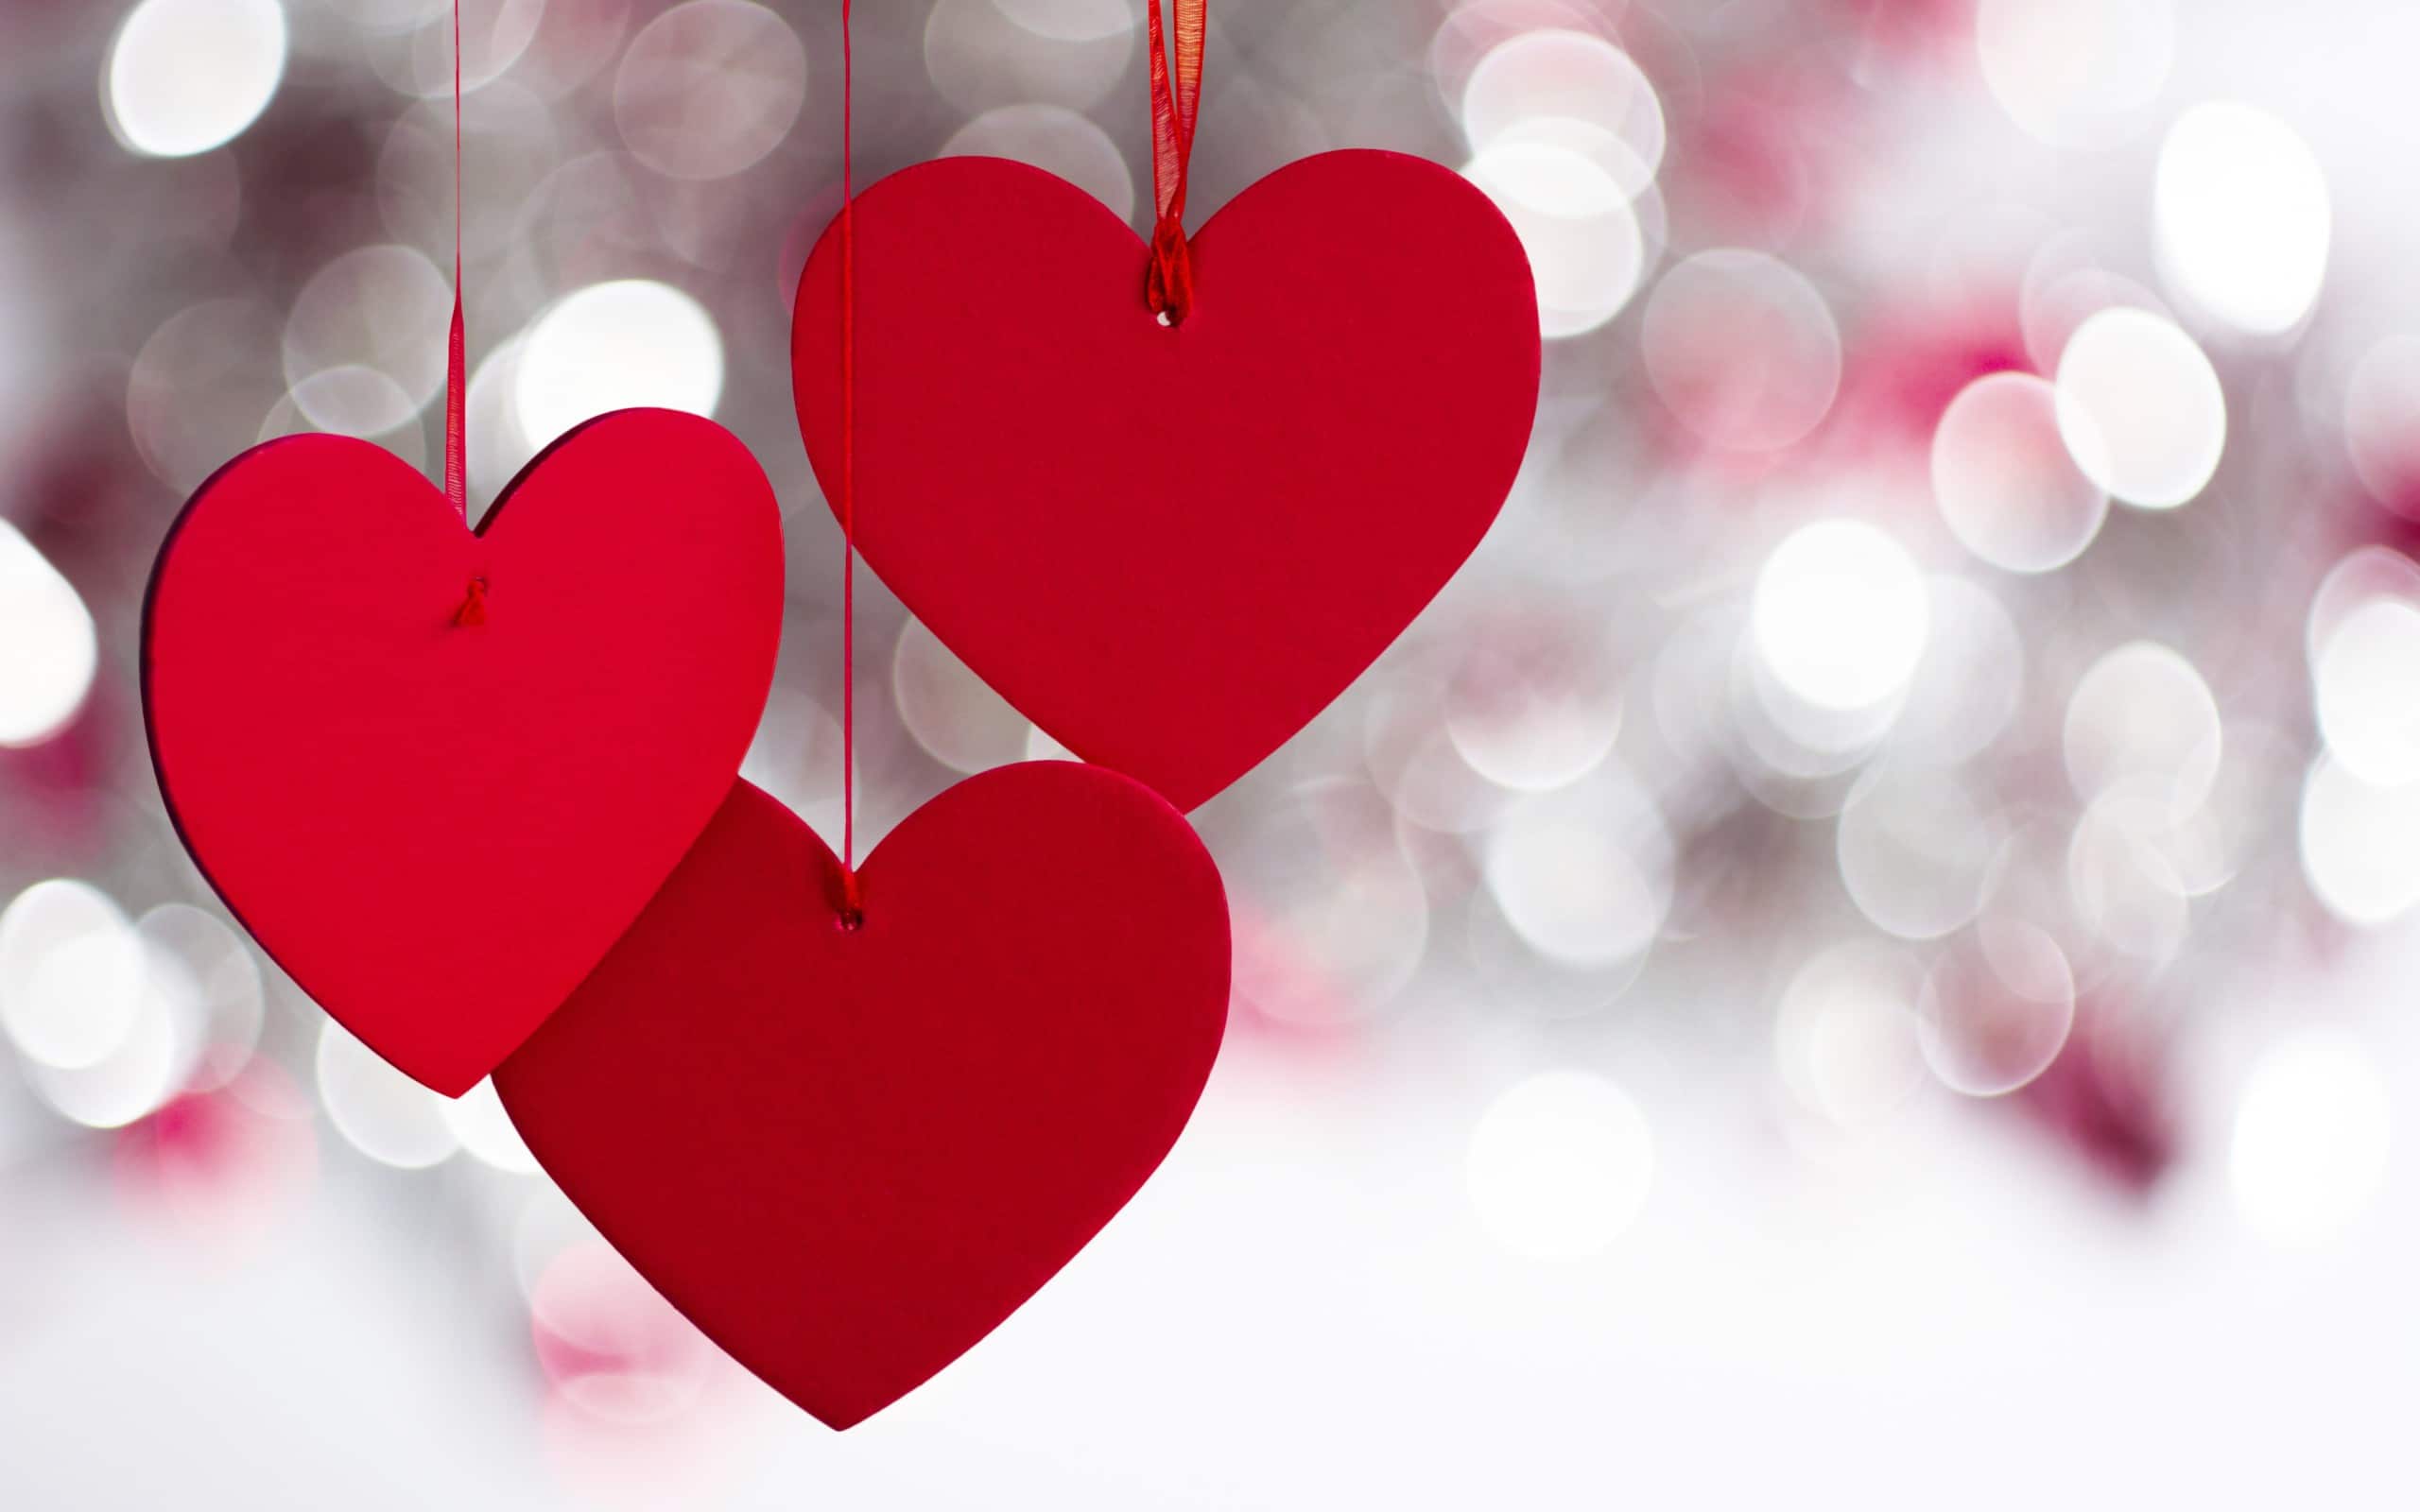 Hình nền laptop Valentine\'s Day tạo ra sự khác biệt với những điều tình cảm trong ngày Valentine. Hãy chiêm ngưỡng hình ảnh liên quan để cảm nhận lòng tham gia đầy cảm xúc và yêu thương của mình.